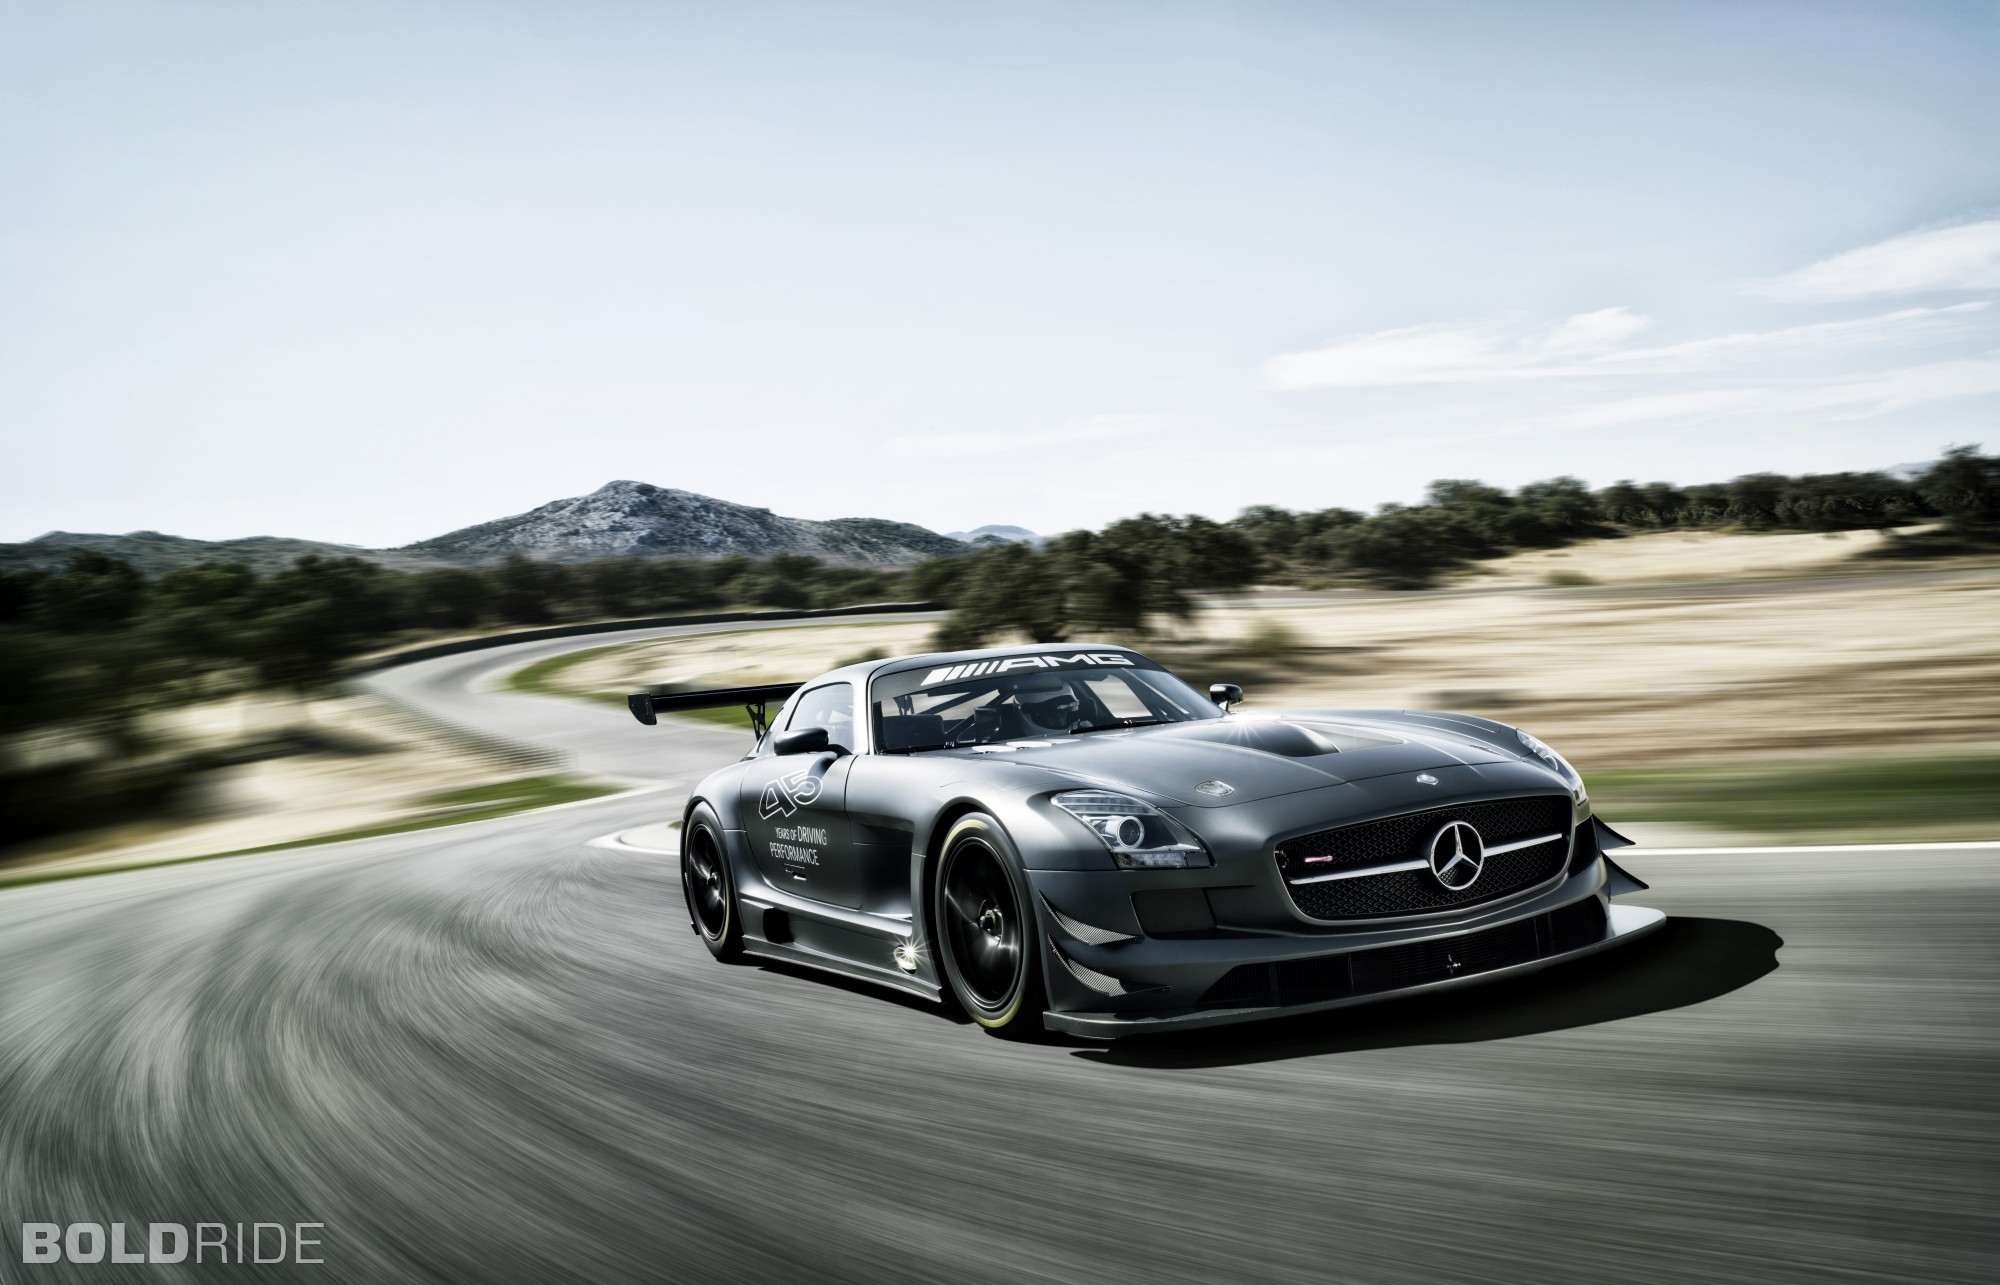 2013, Mercedes, Benz, Sls, Amg, Gt3, Race, Racing, Supercar, Tg Wallpaper